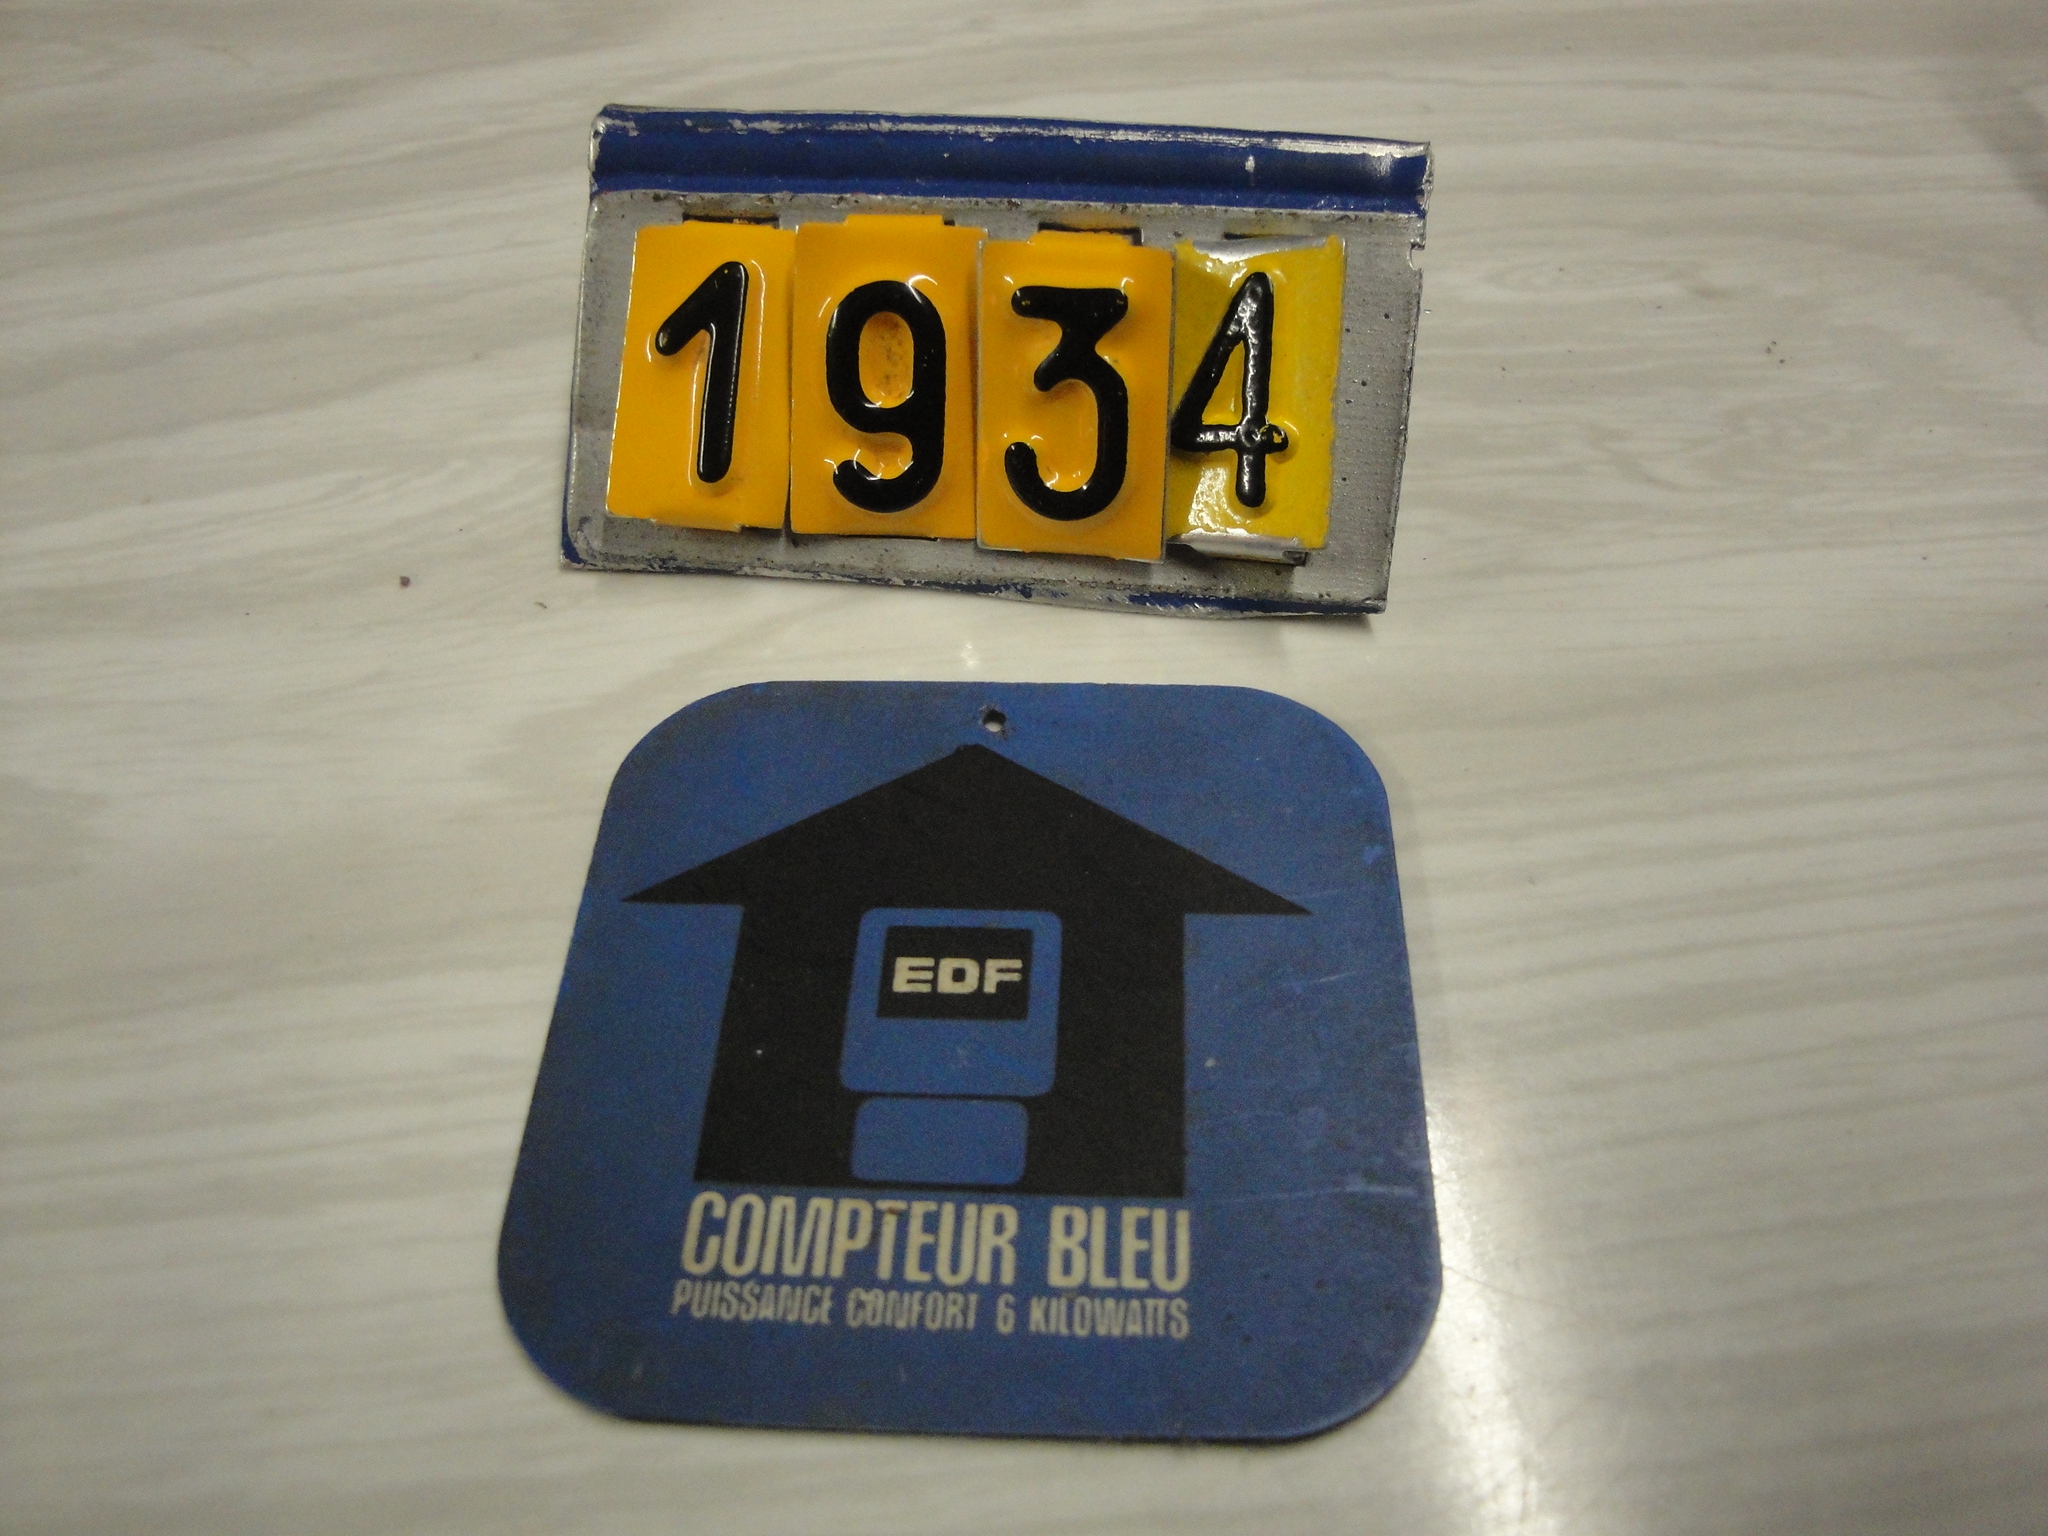  Collection ASPEG, pièce numéro 1934 : Etiquète Compteur bleu